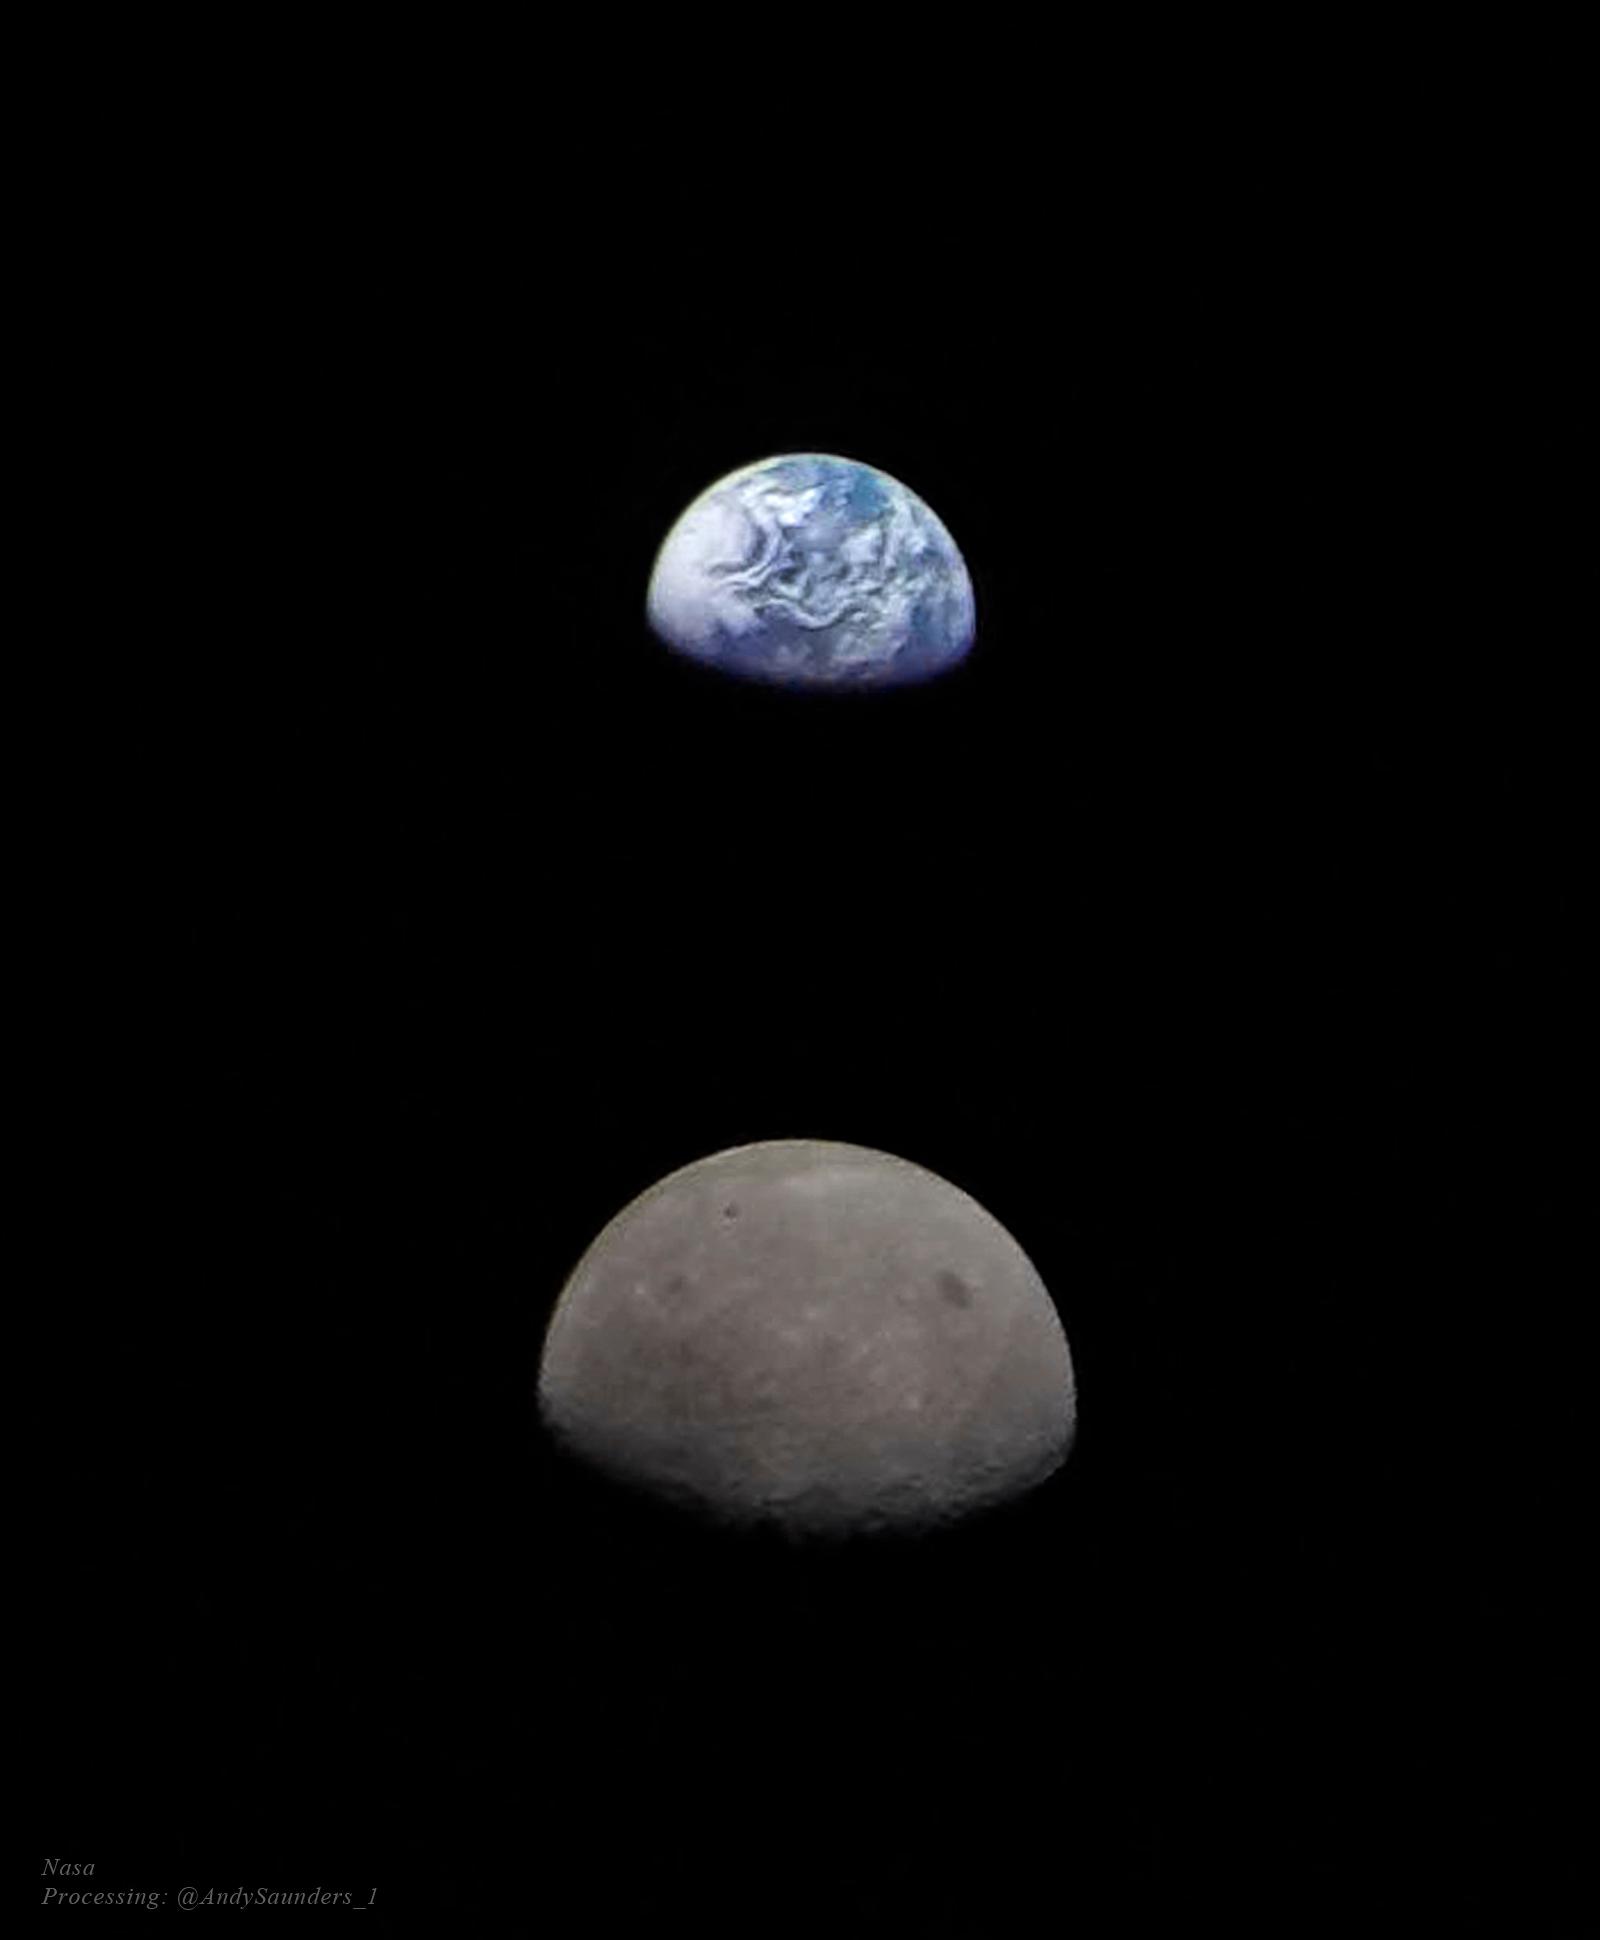 القمر والأرض مصوّران قبالة خلفيّة سوداء. يبدو القمر بُنّيّاً وأكبر قليلاً نظراً لدنوّه الأقرب إلى كاميرا أرتيمِس 1. تُرى الأرض كَكُرة زرقاء غائمة فوق القمر.